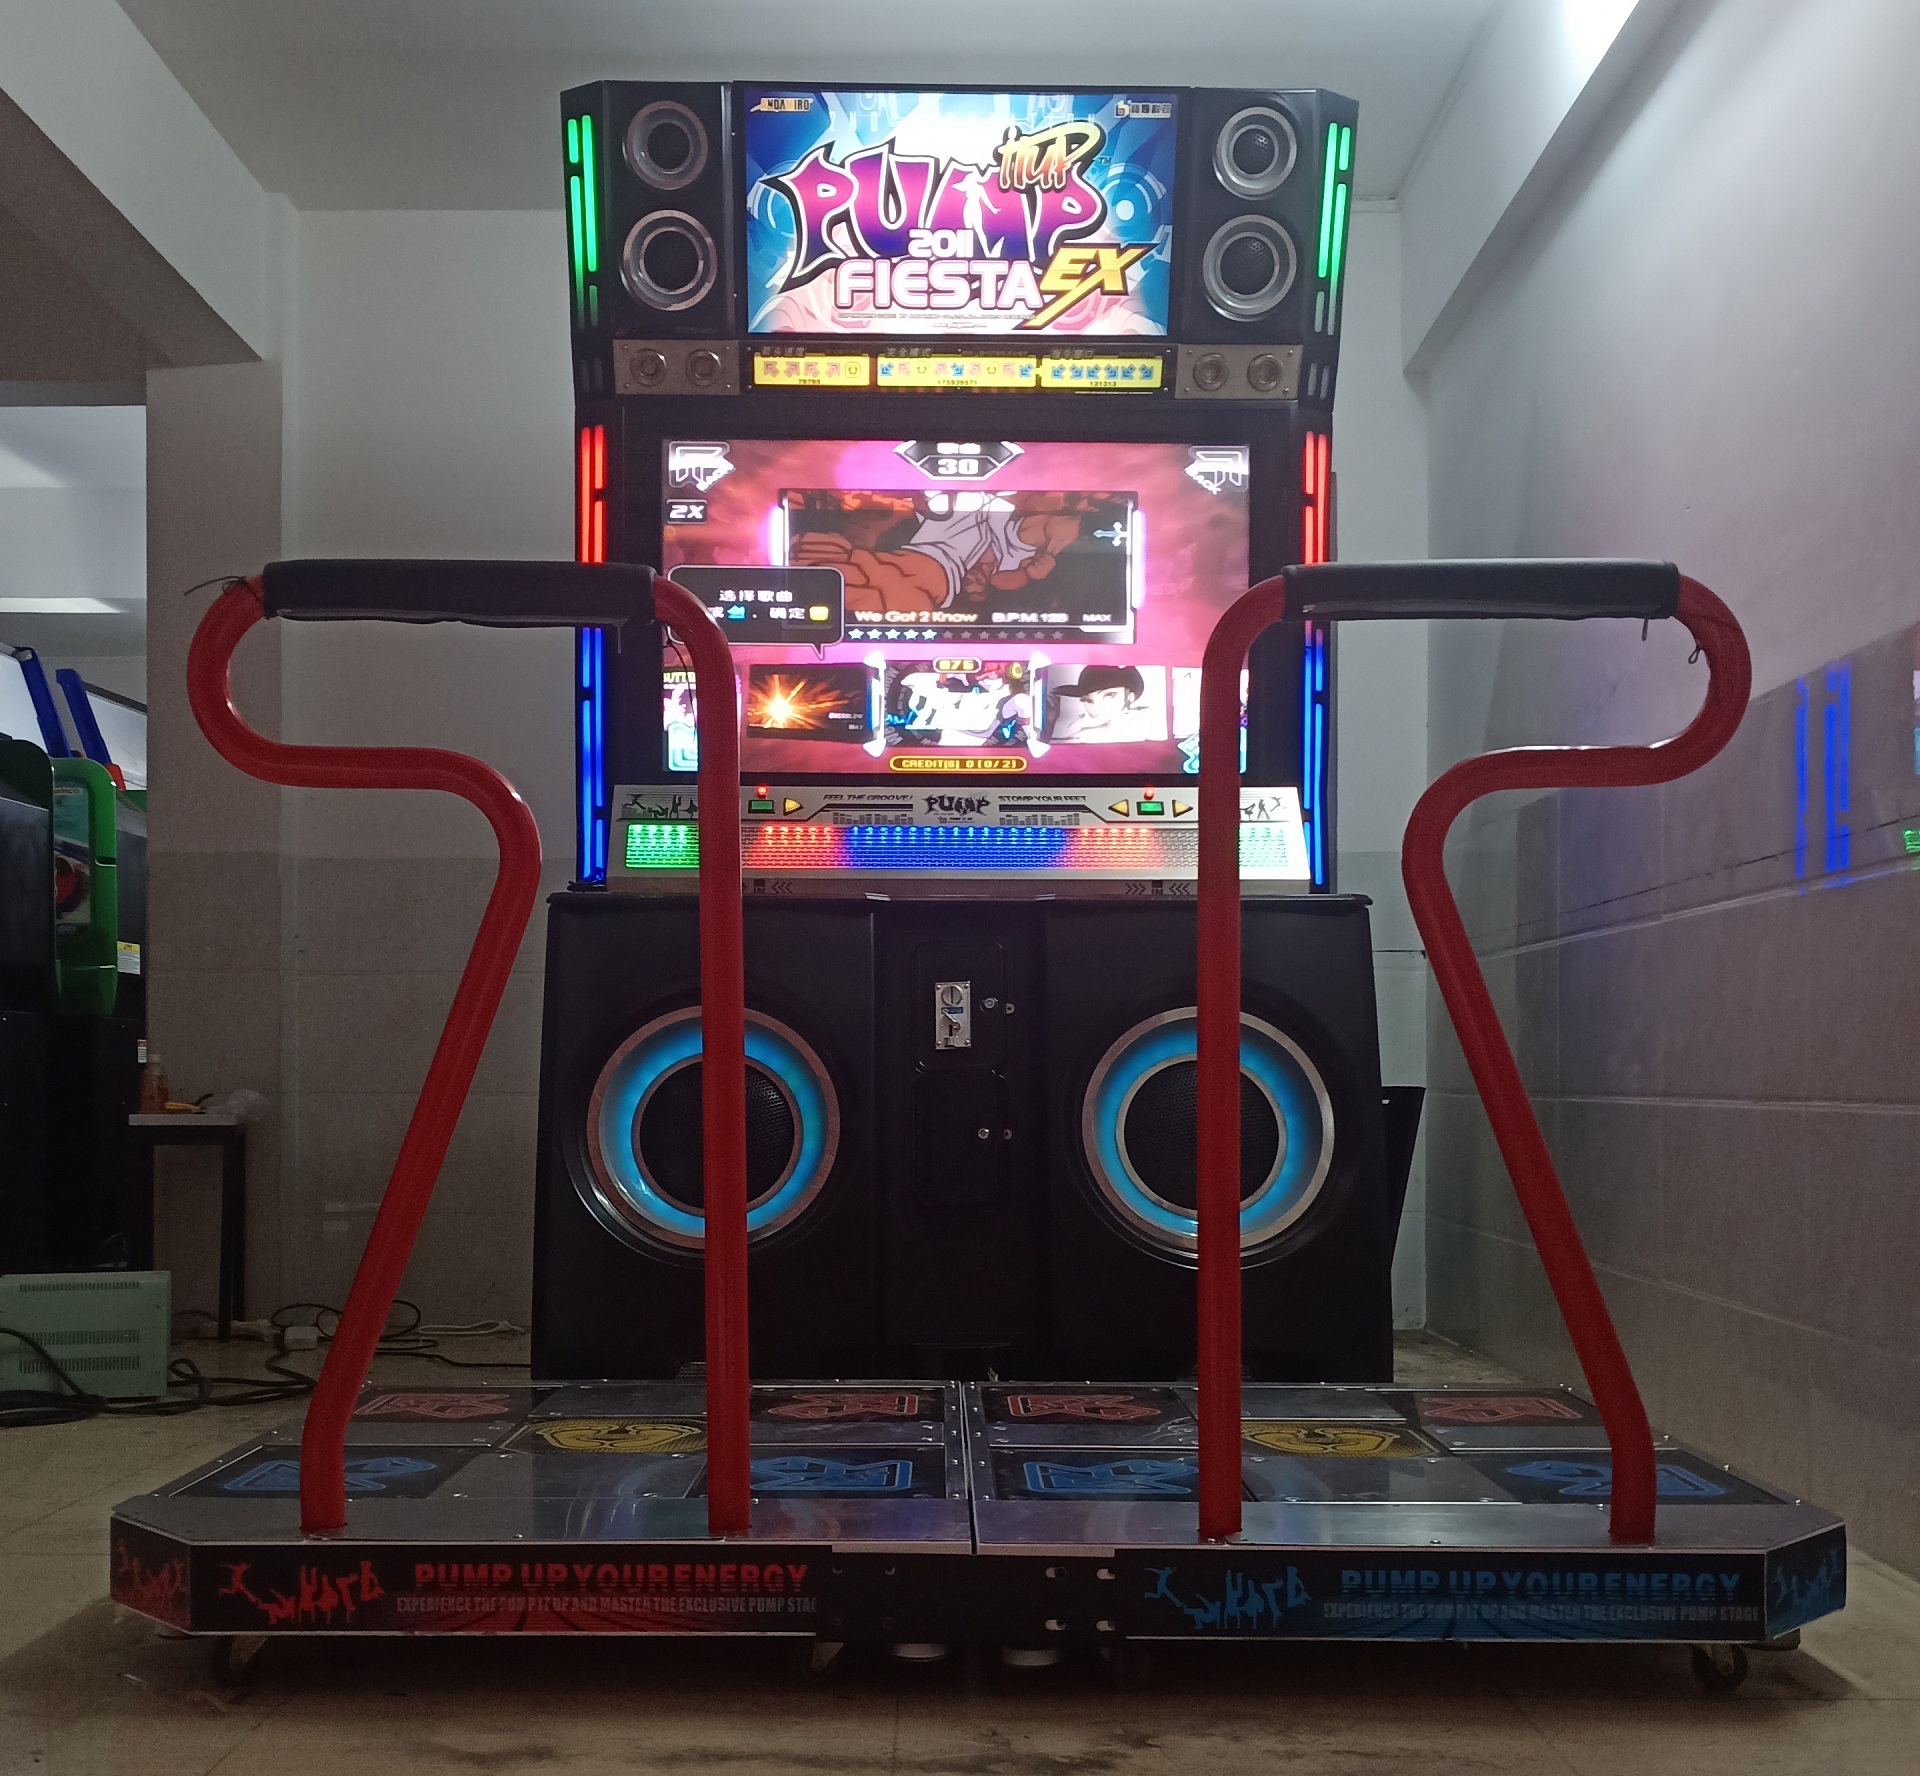 Pump-it-up-FIESTA-EX-piu-2011-dancing-game-machine-Tomy-Arcade-workshop-process